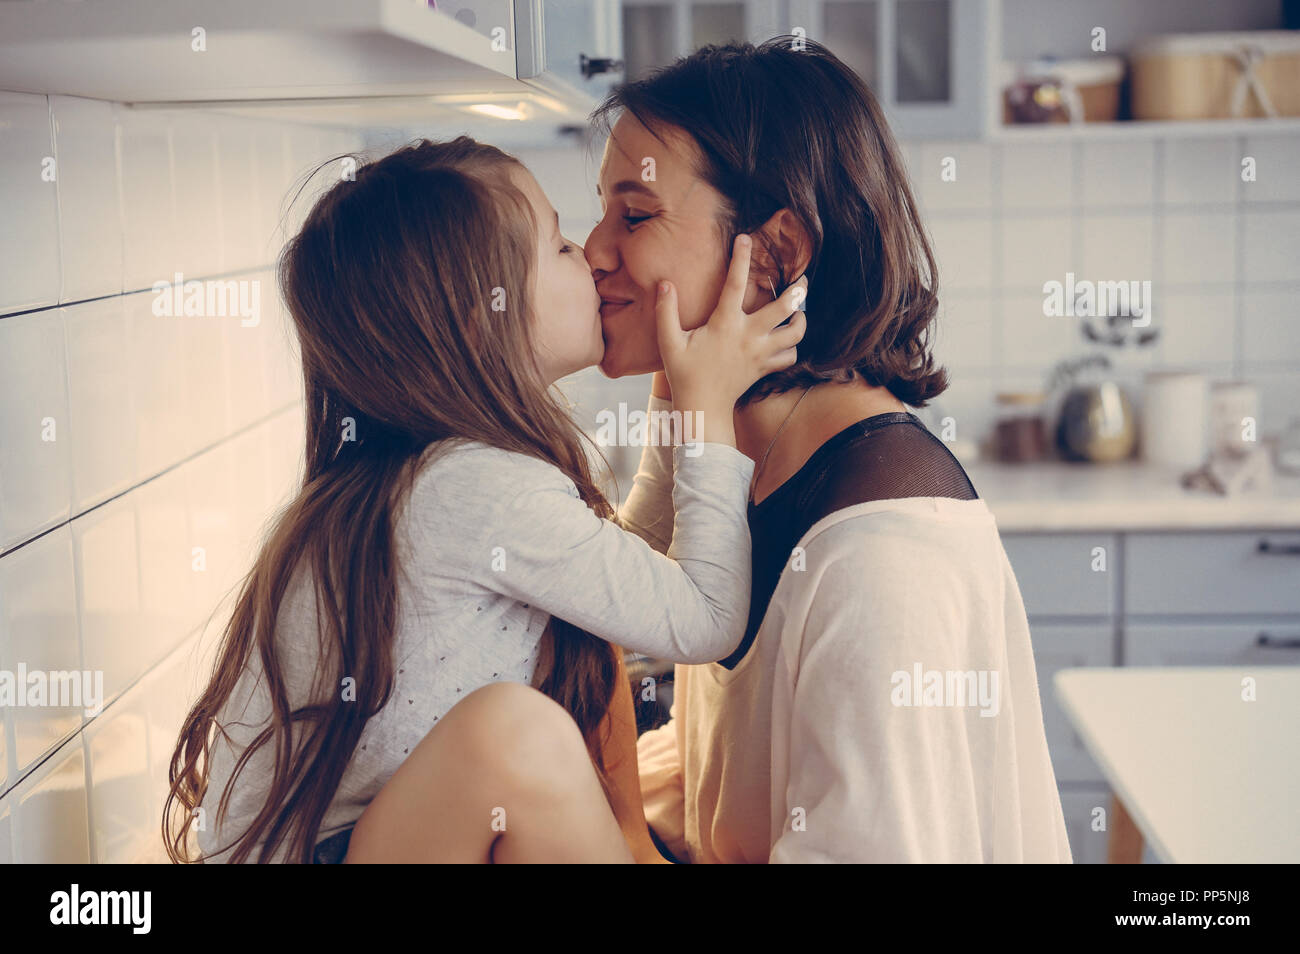 Лесбиянка мама девочка. Мама с дочкой поцелуй. Мама целует дочь. Молодые лесбияночки на кухне. Мать и дочь поцелуй с языком.